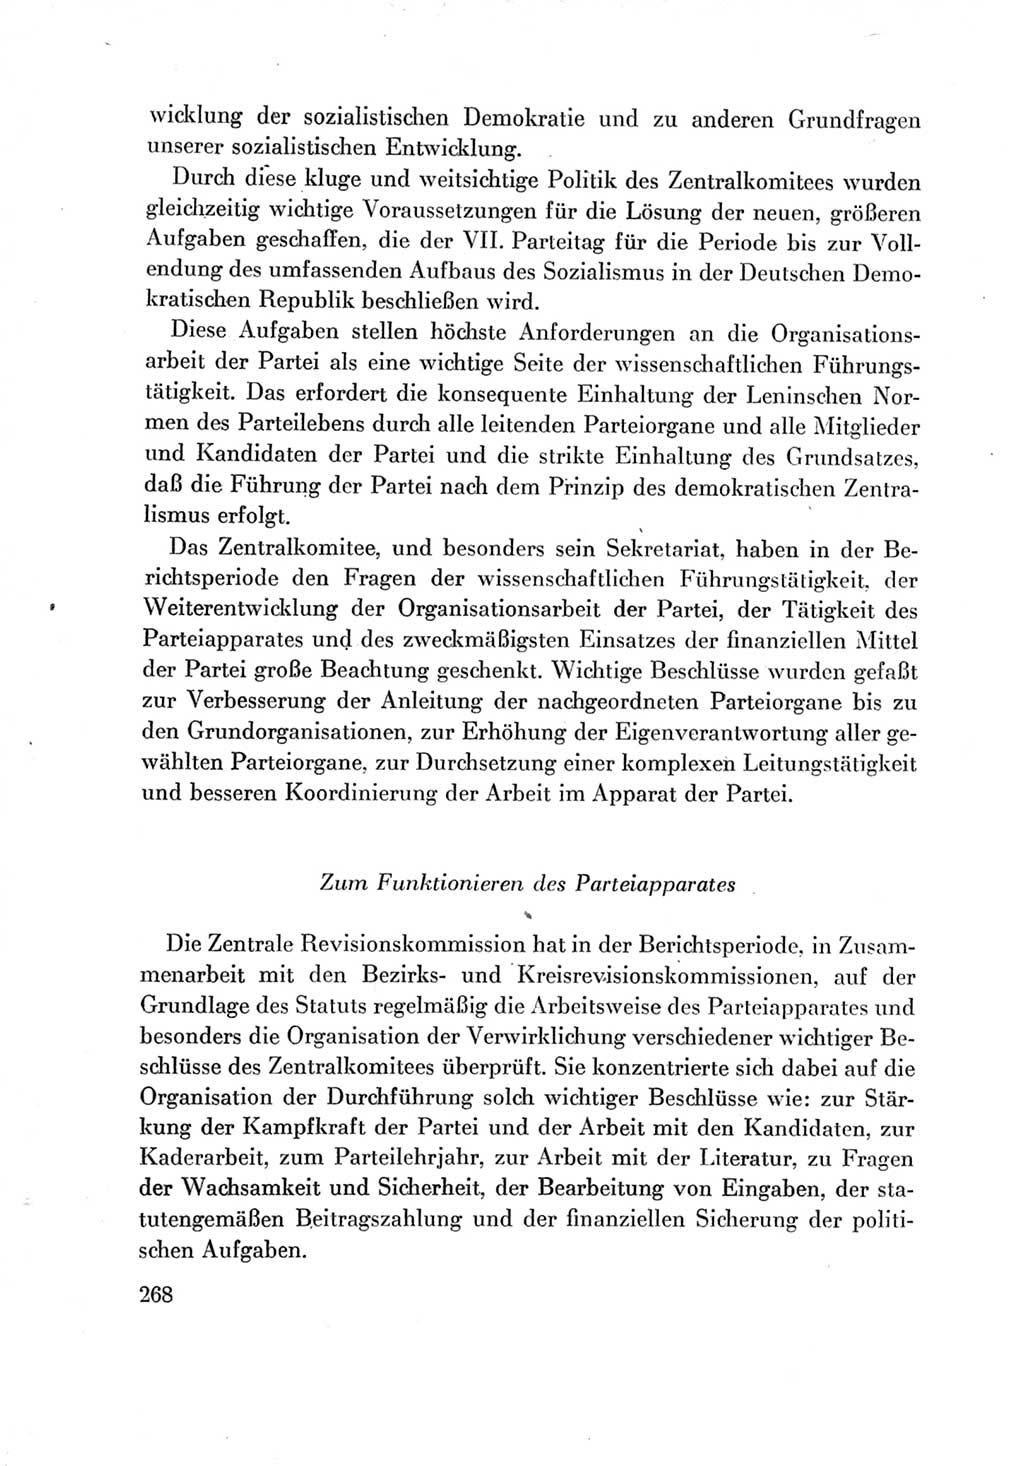 Protokoll der Verhandlungen des Ⅶ. Parteitages der Sozialistischen Einheitspartei Deutschlands (SED) [Deutsche Demokratische Republik (DDR)] 1967, Band Ⅳ, Seite 268 (Prot. Verh. Ⅶ. PT SED DDR 1967, Bd. Ⅳ, S. 268)